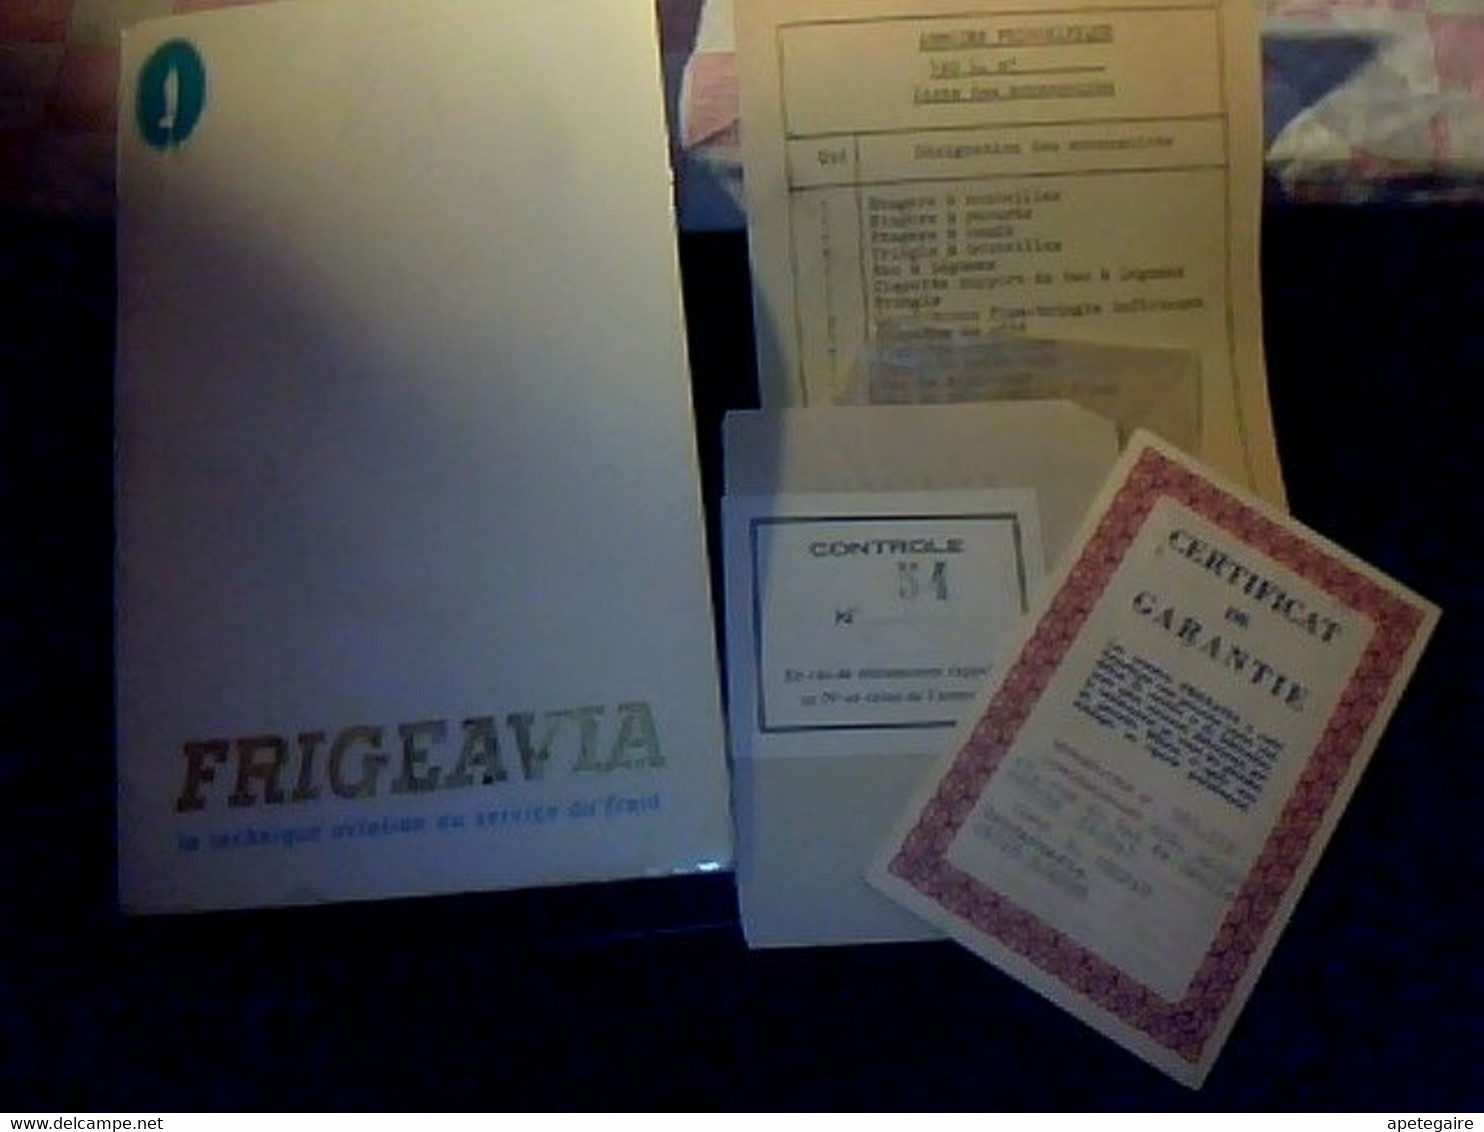 Réfrigérateurs Frigeavia Livret Technique Avec Recettes Plus Certifica De Garantie Année 1962 - Supplies And Equipment